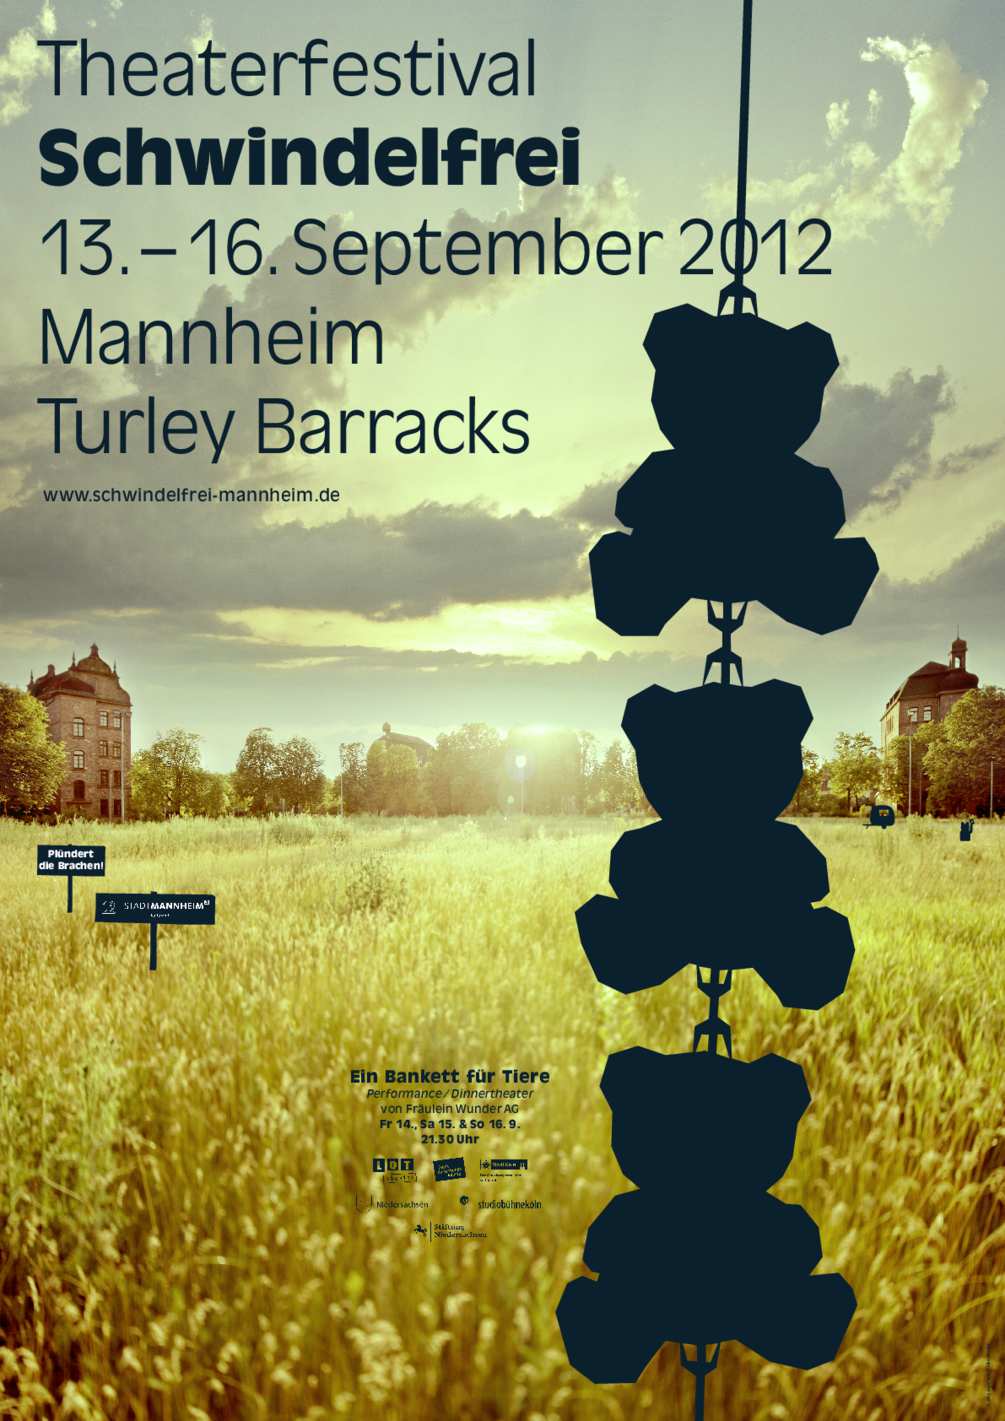 theater-festival-schwindelfrei-poster-02-1005x1421px